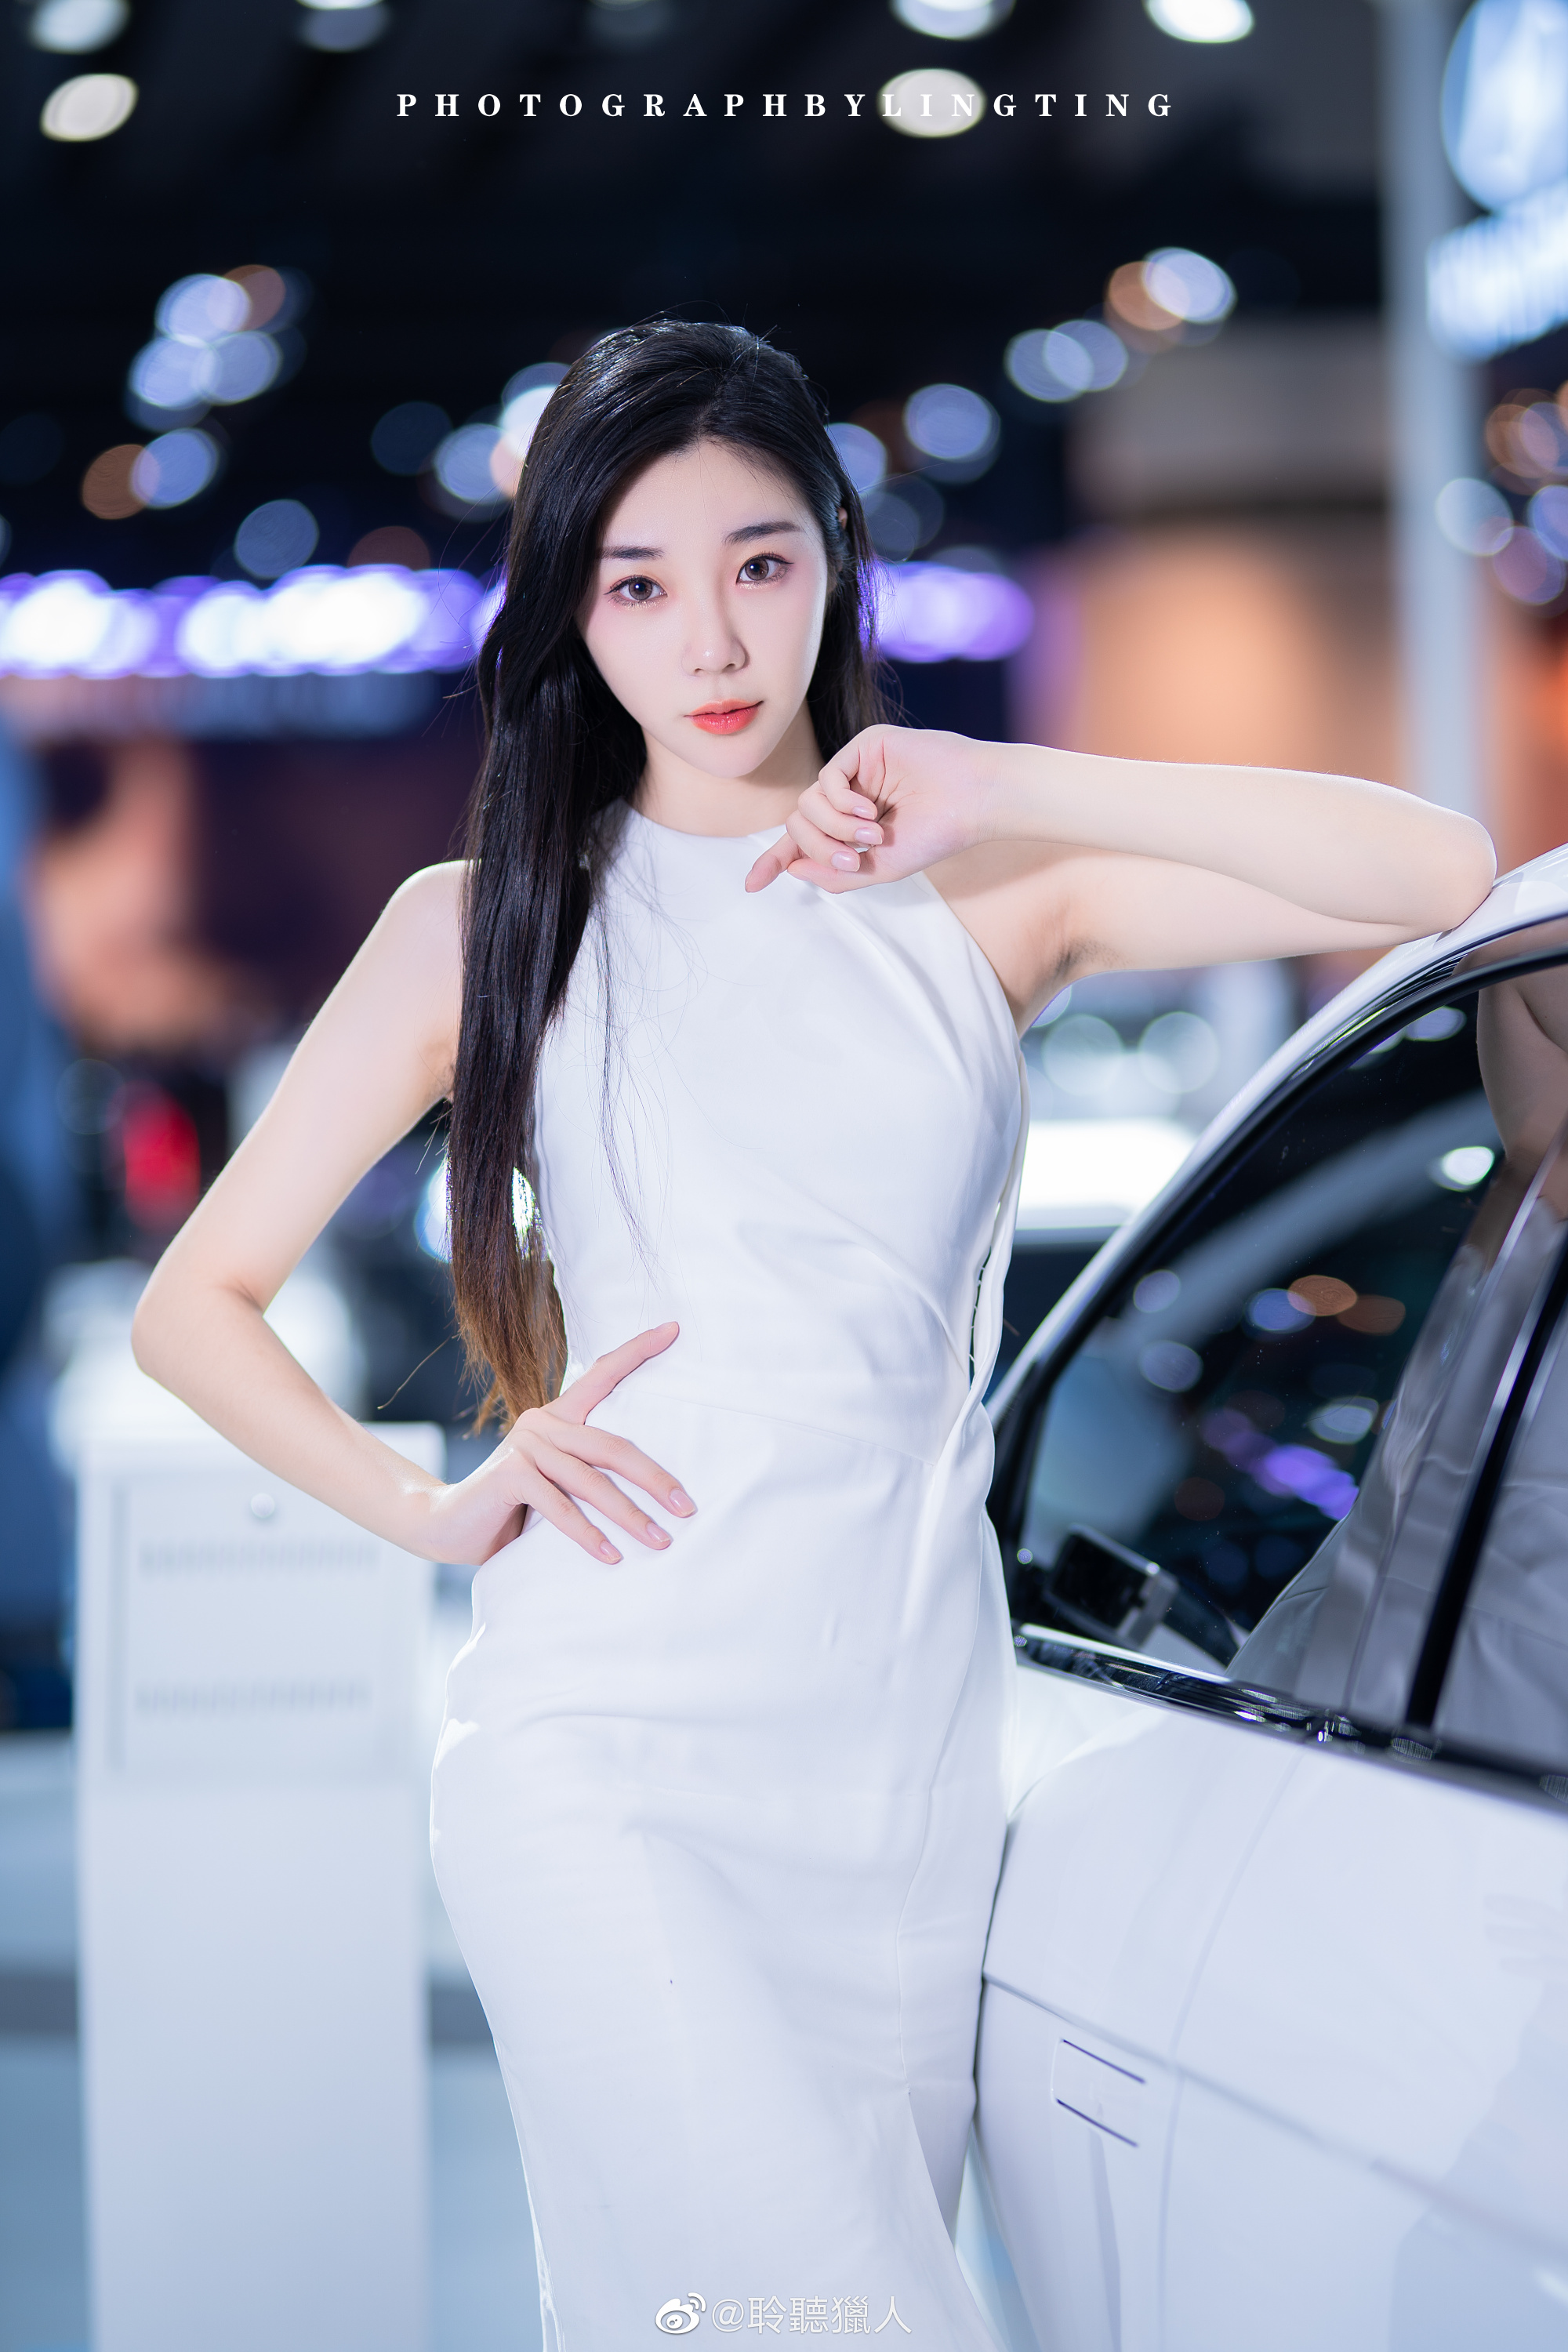 黑长直发美女车模高跟GOGO韩国肉体艺术图片